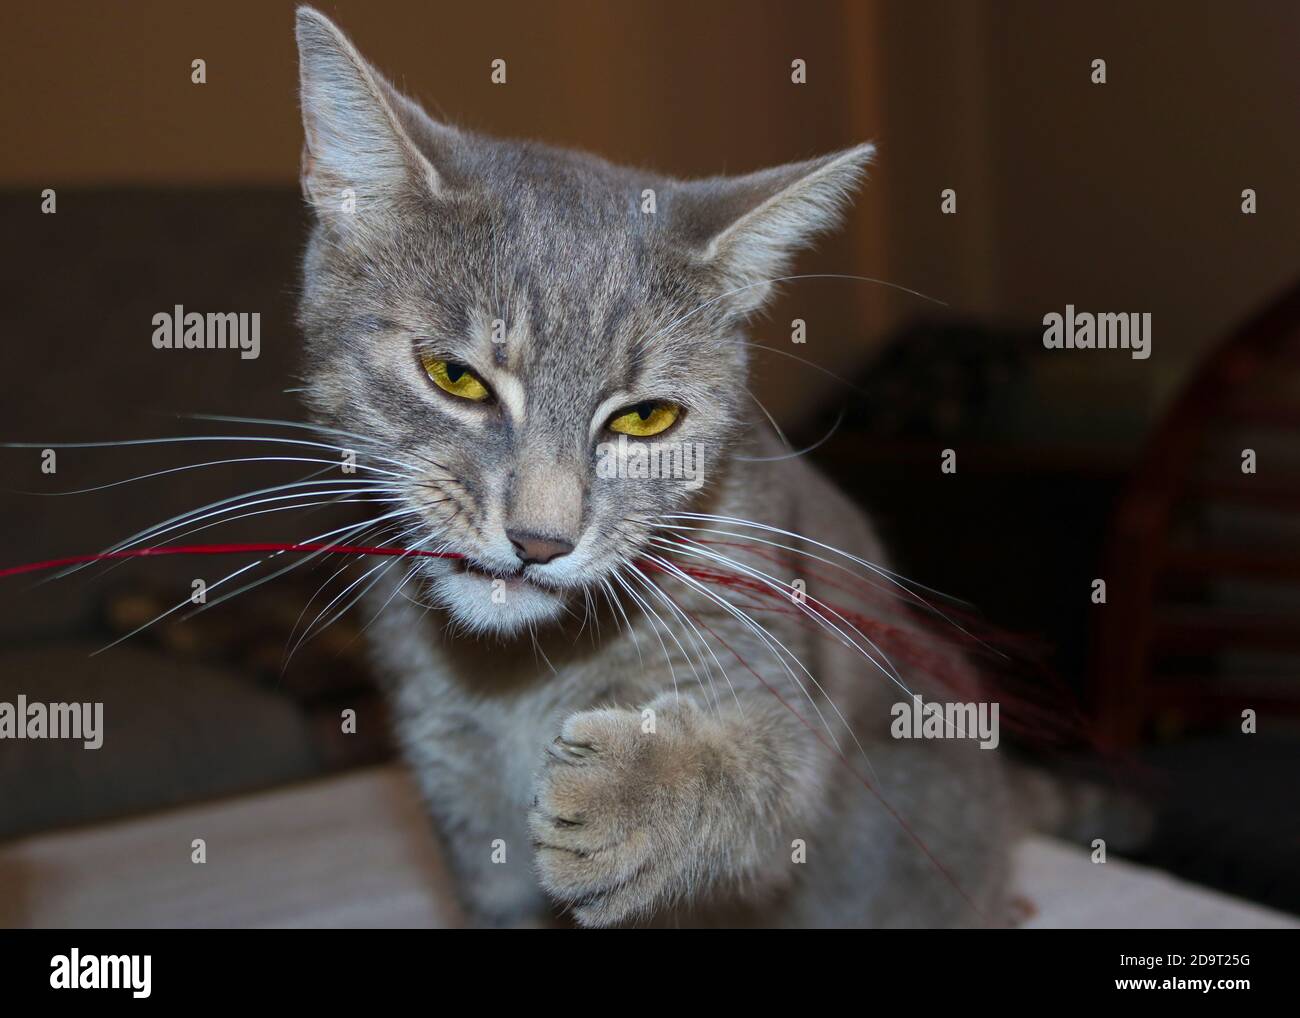 Un gato gris jugando con cinta roja Foto de stock